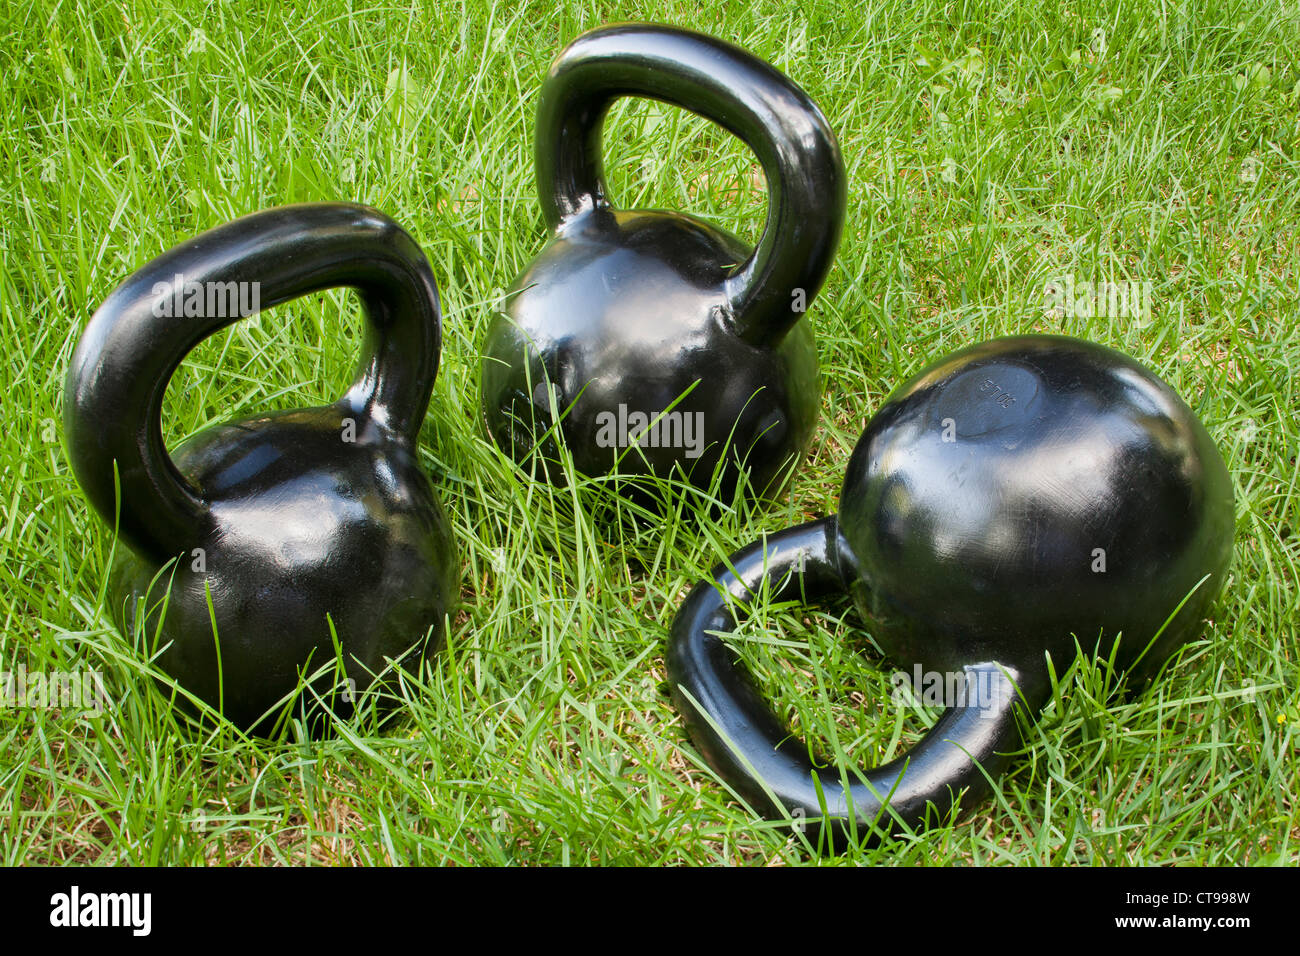 drei schwere Eisen Kettlebells in Grasgrün - outdoor-Fitness-Konzept Stockfoto